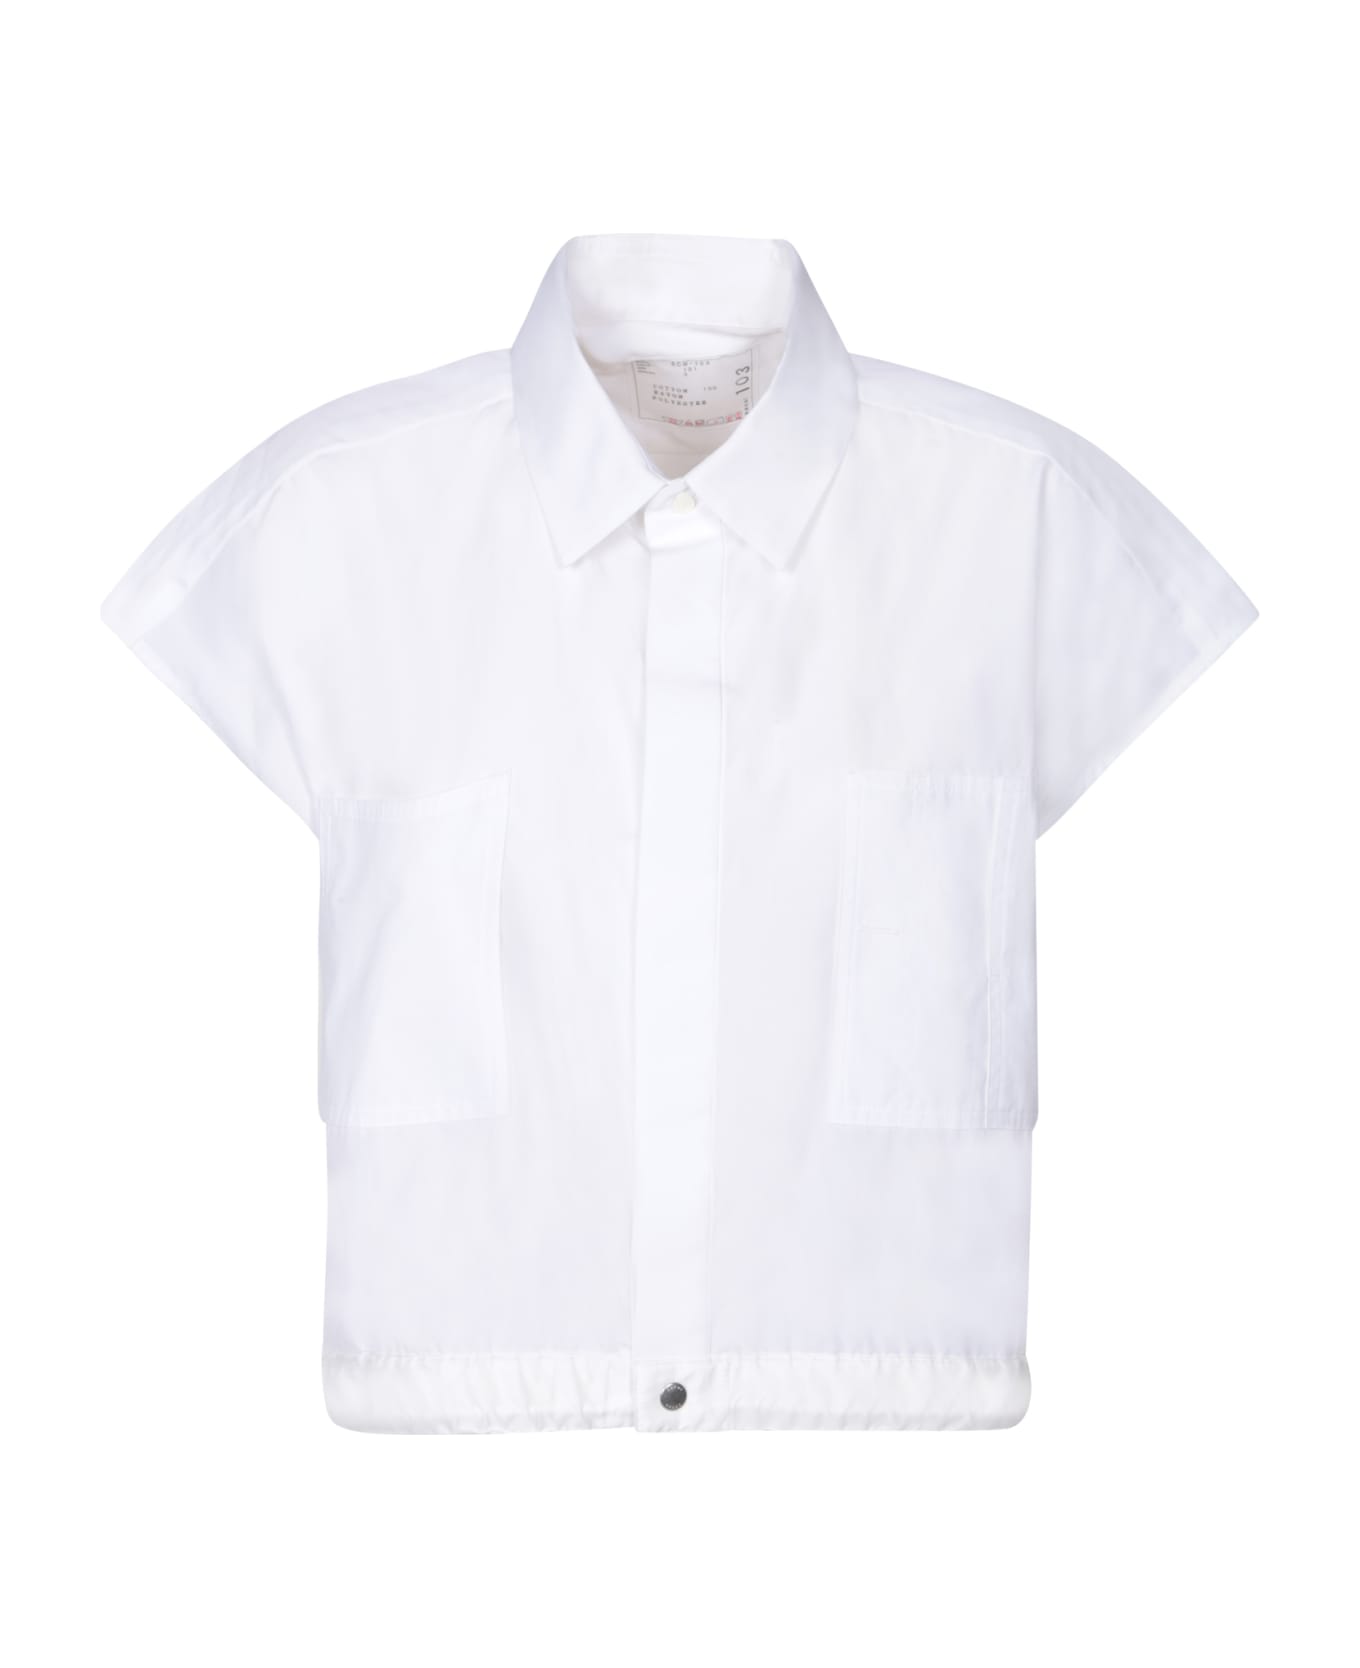 Sacai Thomas White Shirt - White